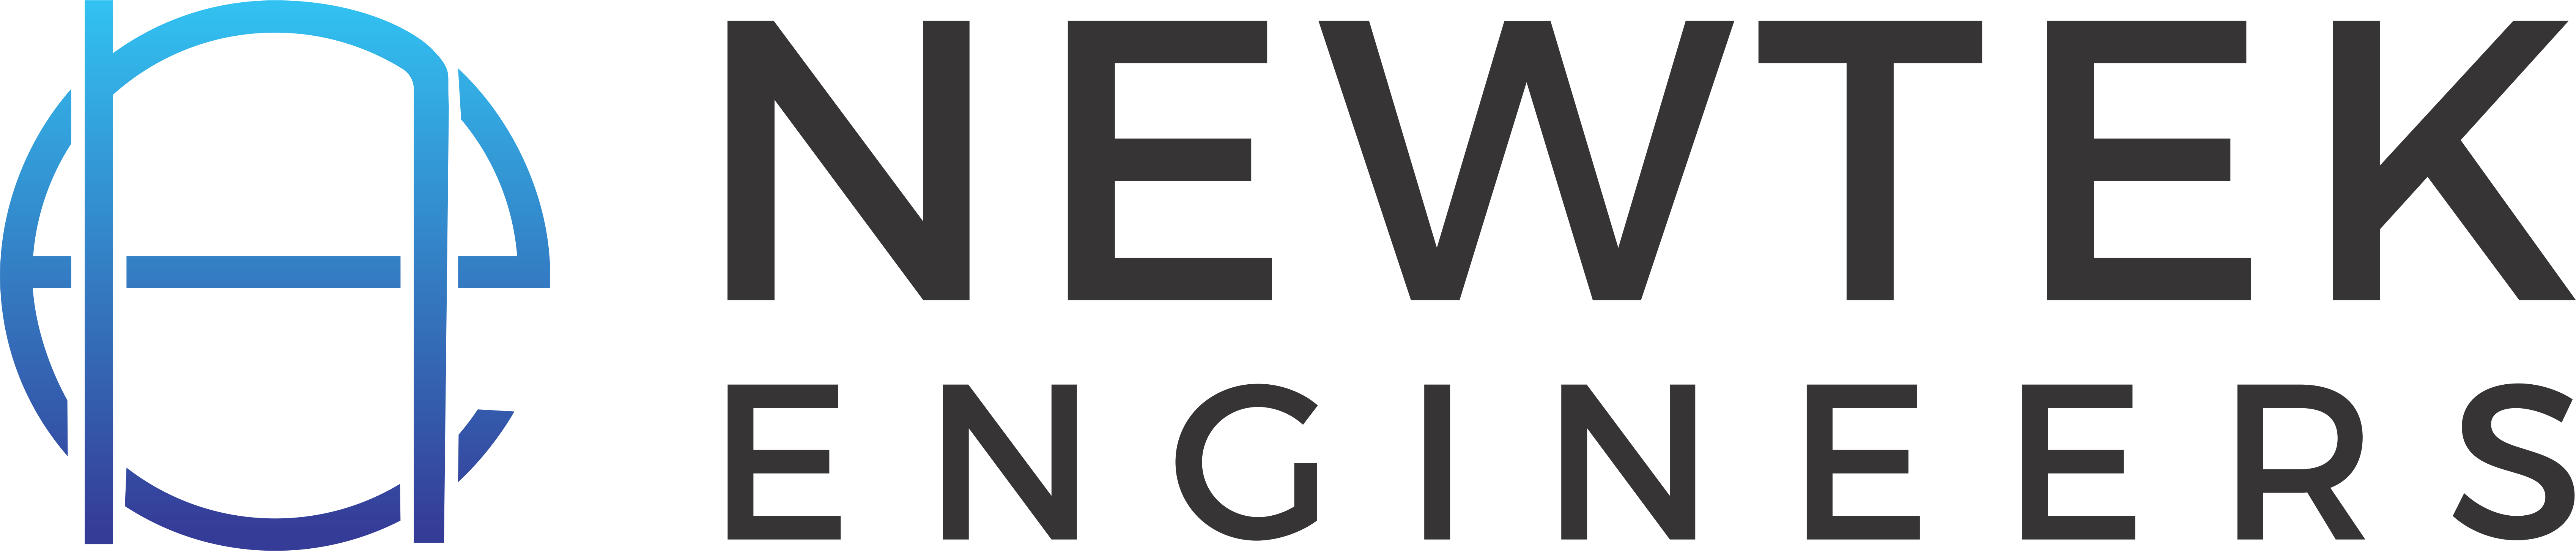 Newtek Engineers